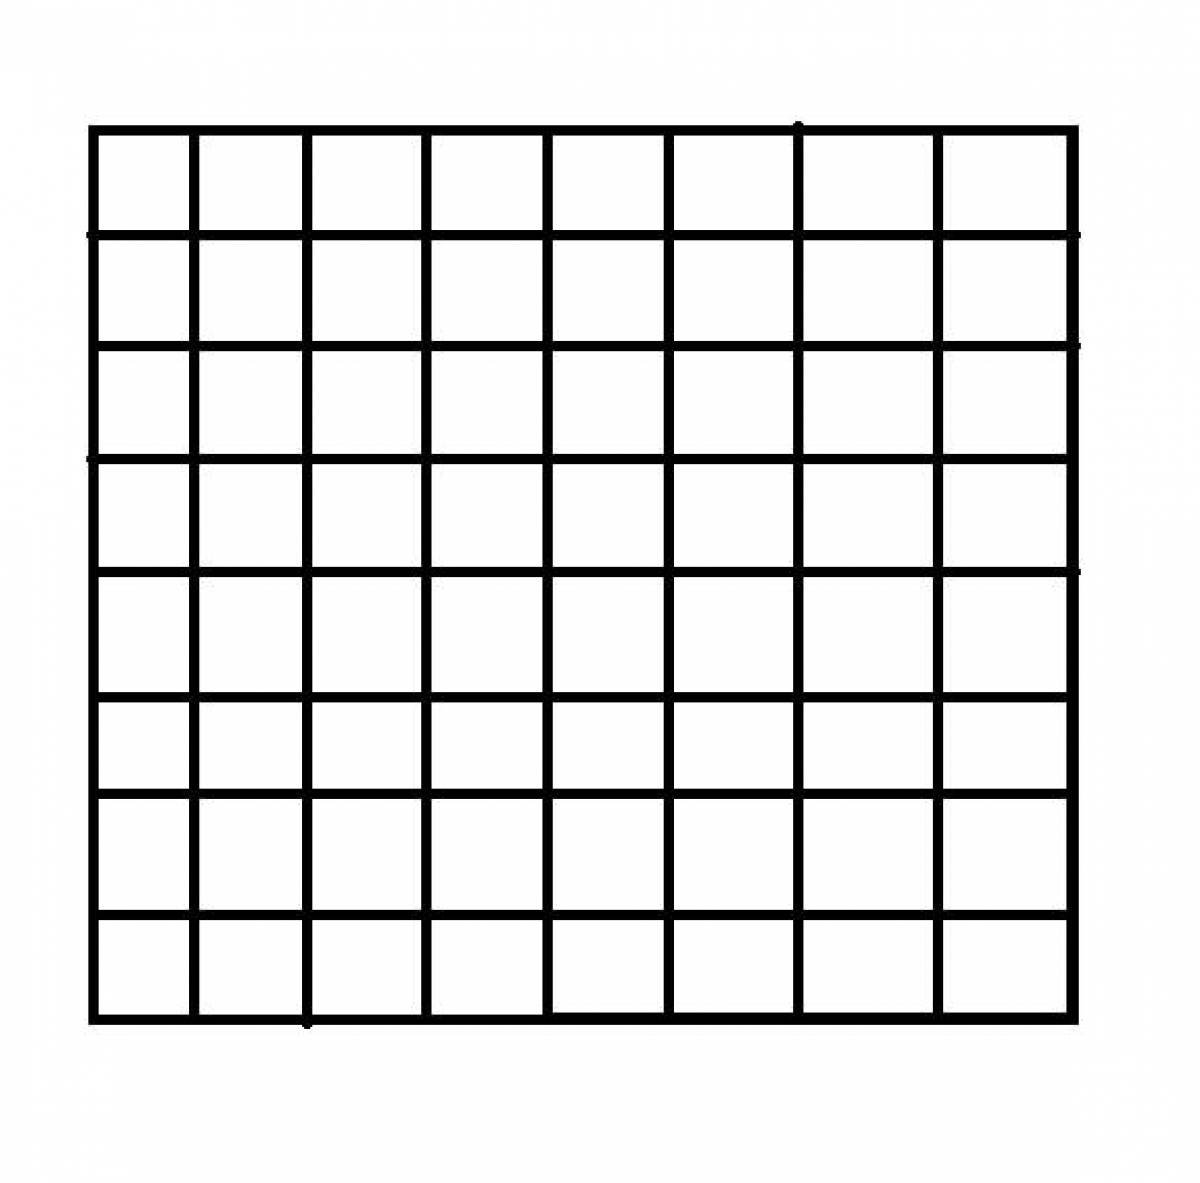 На шахматной доске 64 клетки поля. Квадратная сетка. Сетка рисунок. Клетки квадратные. Сетка "прямоугольная".